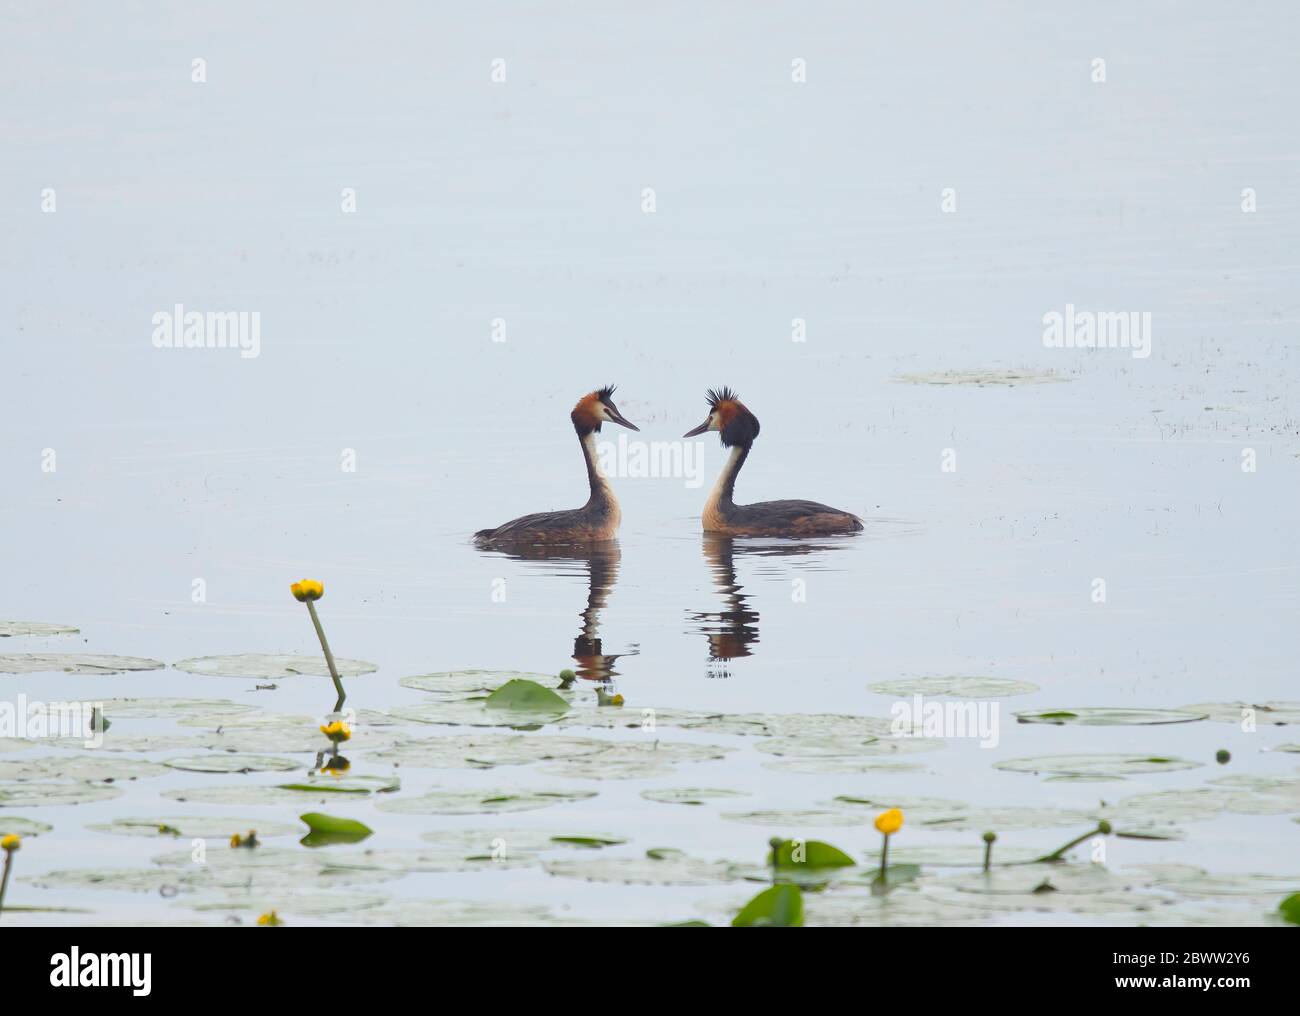 Deutschland, Bayern, zwei Haubenfiese (Podiceps cristatus) schwimmen im Chiemsee Stockfoto